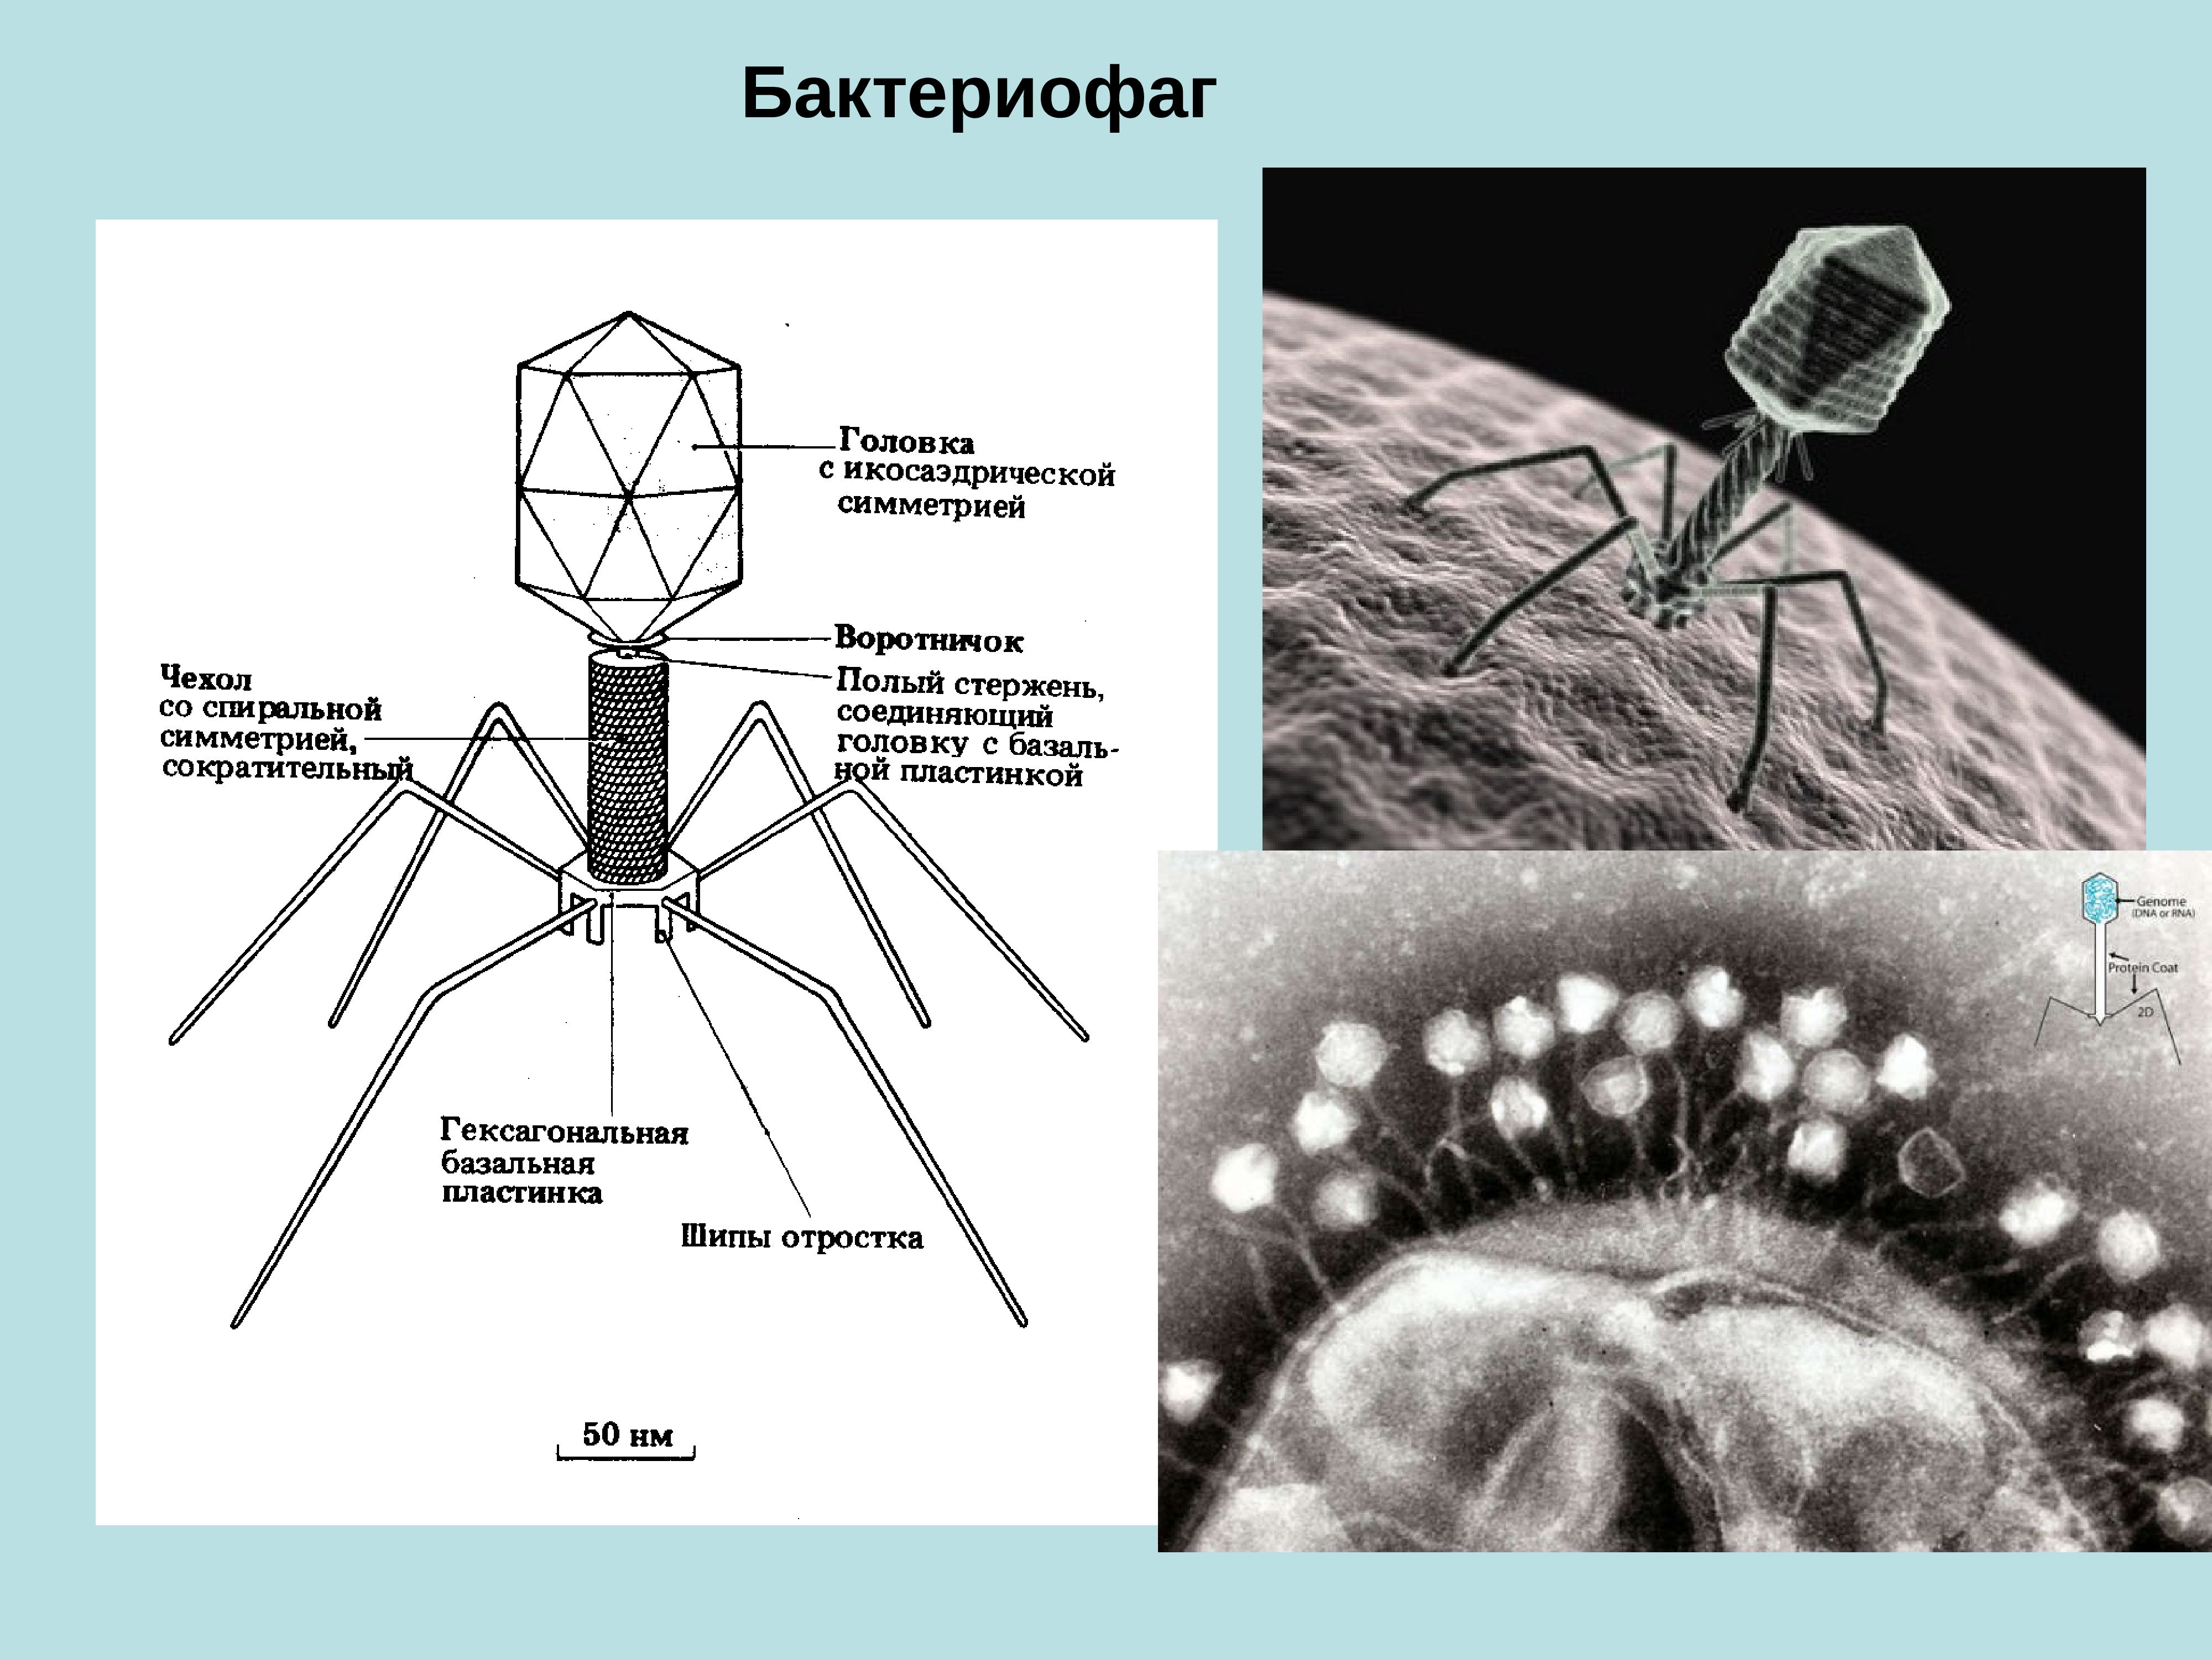 Наследственный аппарат бактериофага. Капсид бактериофага. Строение бактериофага микробиология. Бактериофаги Myoviridae. Строение фага микробиология.